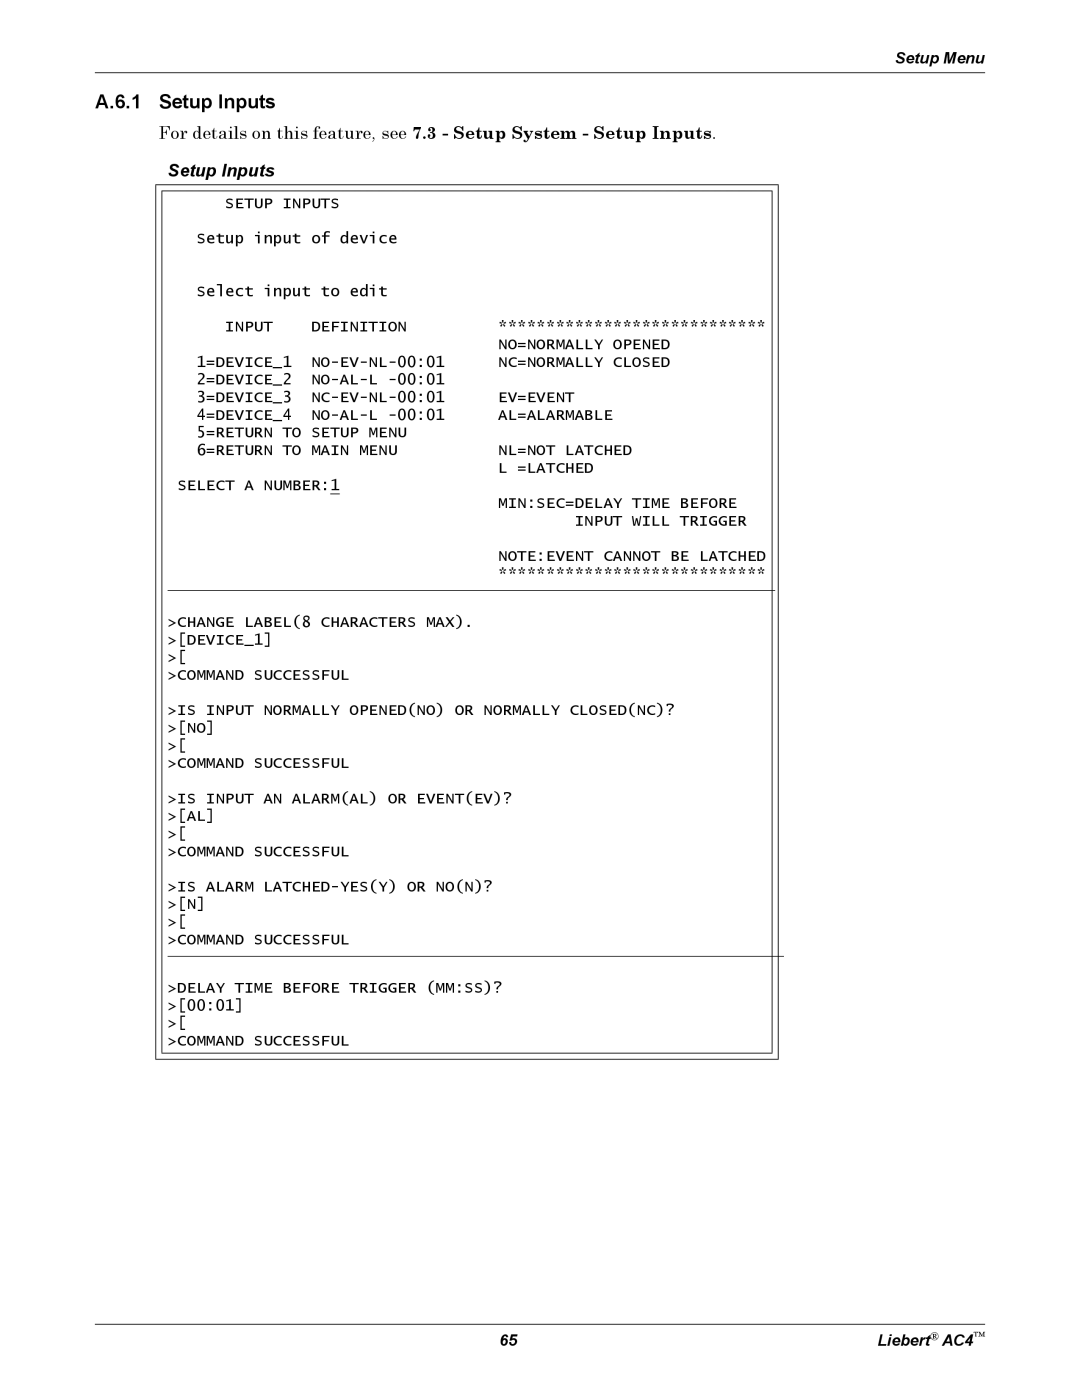 Emerson user manual A.6.1 Setup Inputs, Setup Menu, Liebert AC4 